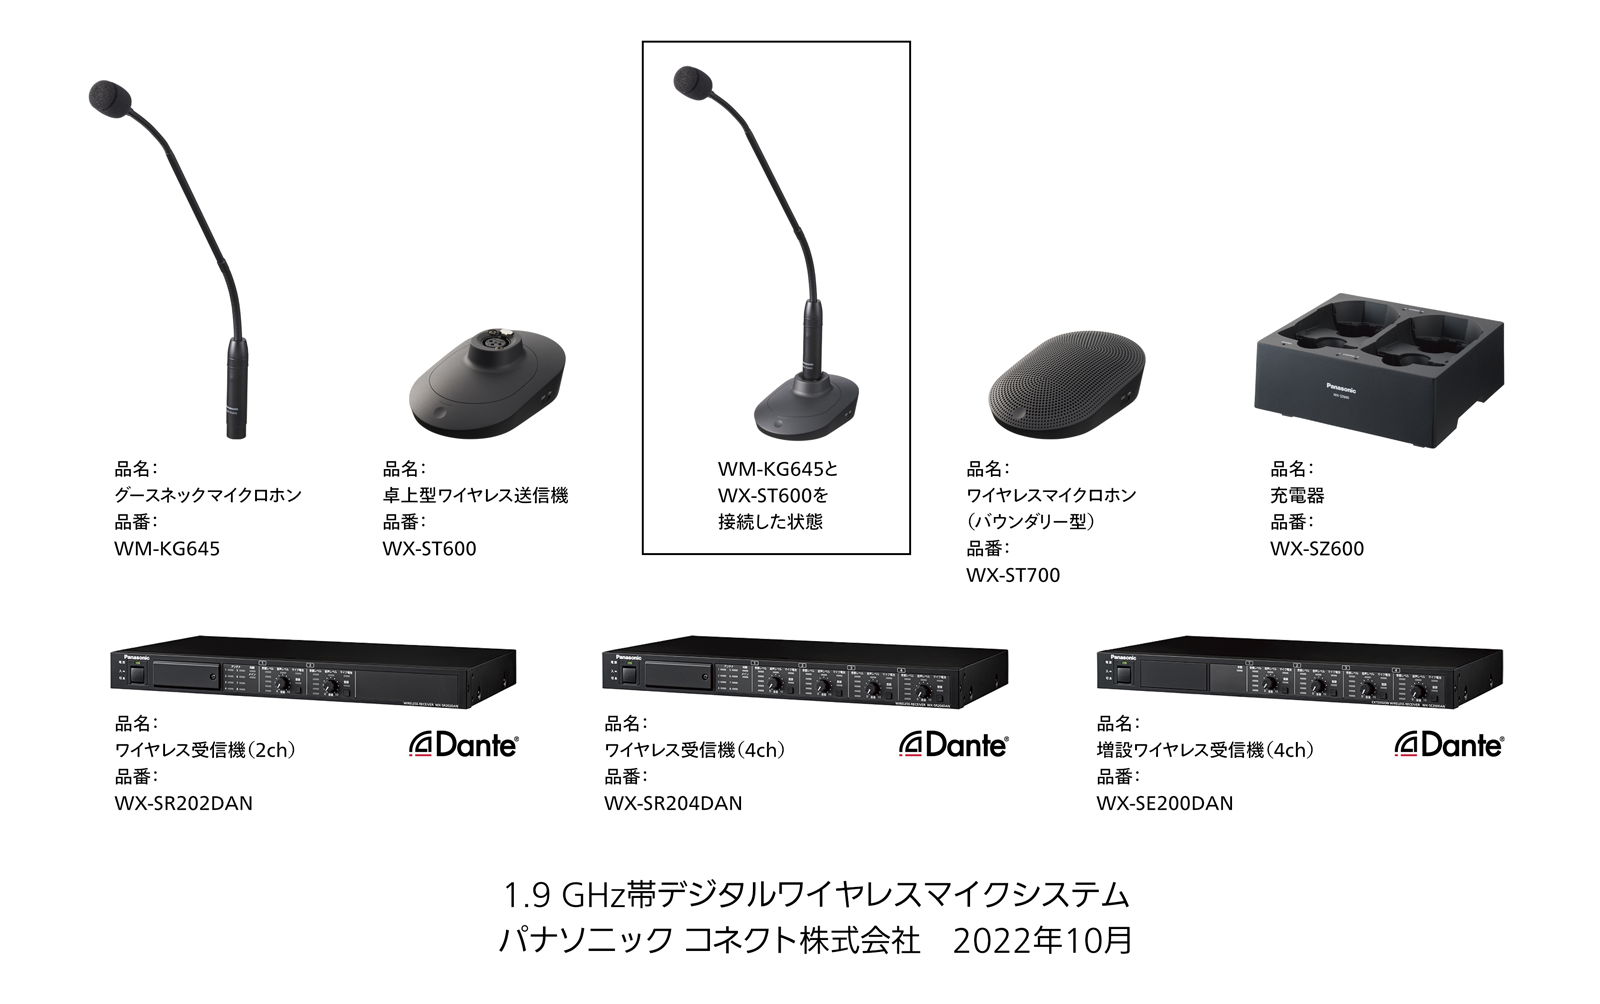 1.9GHz帯デジタルワイヤレスマイクシステム 7製品 を発売 | 新製品